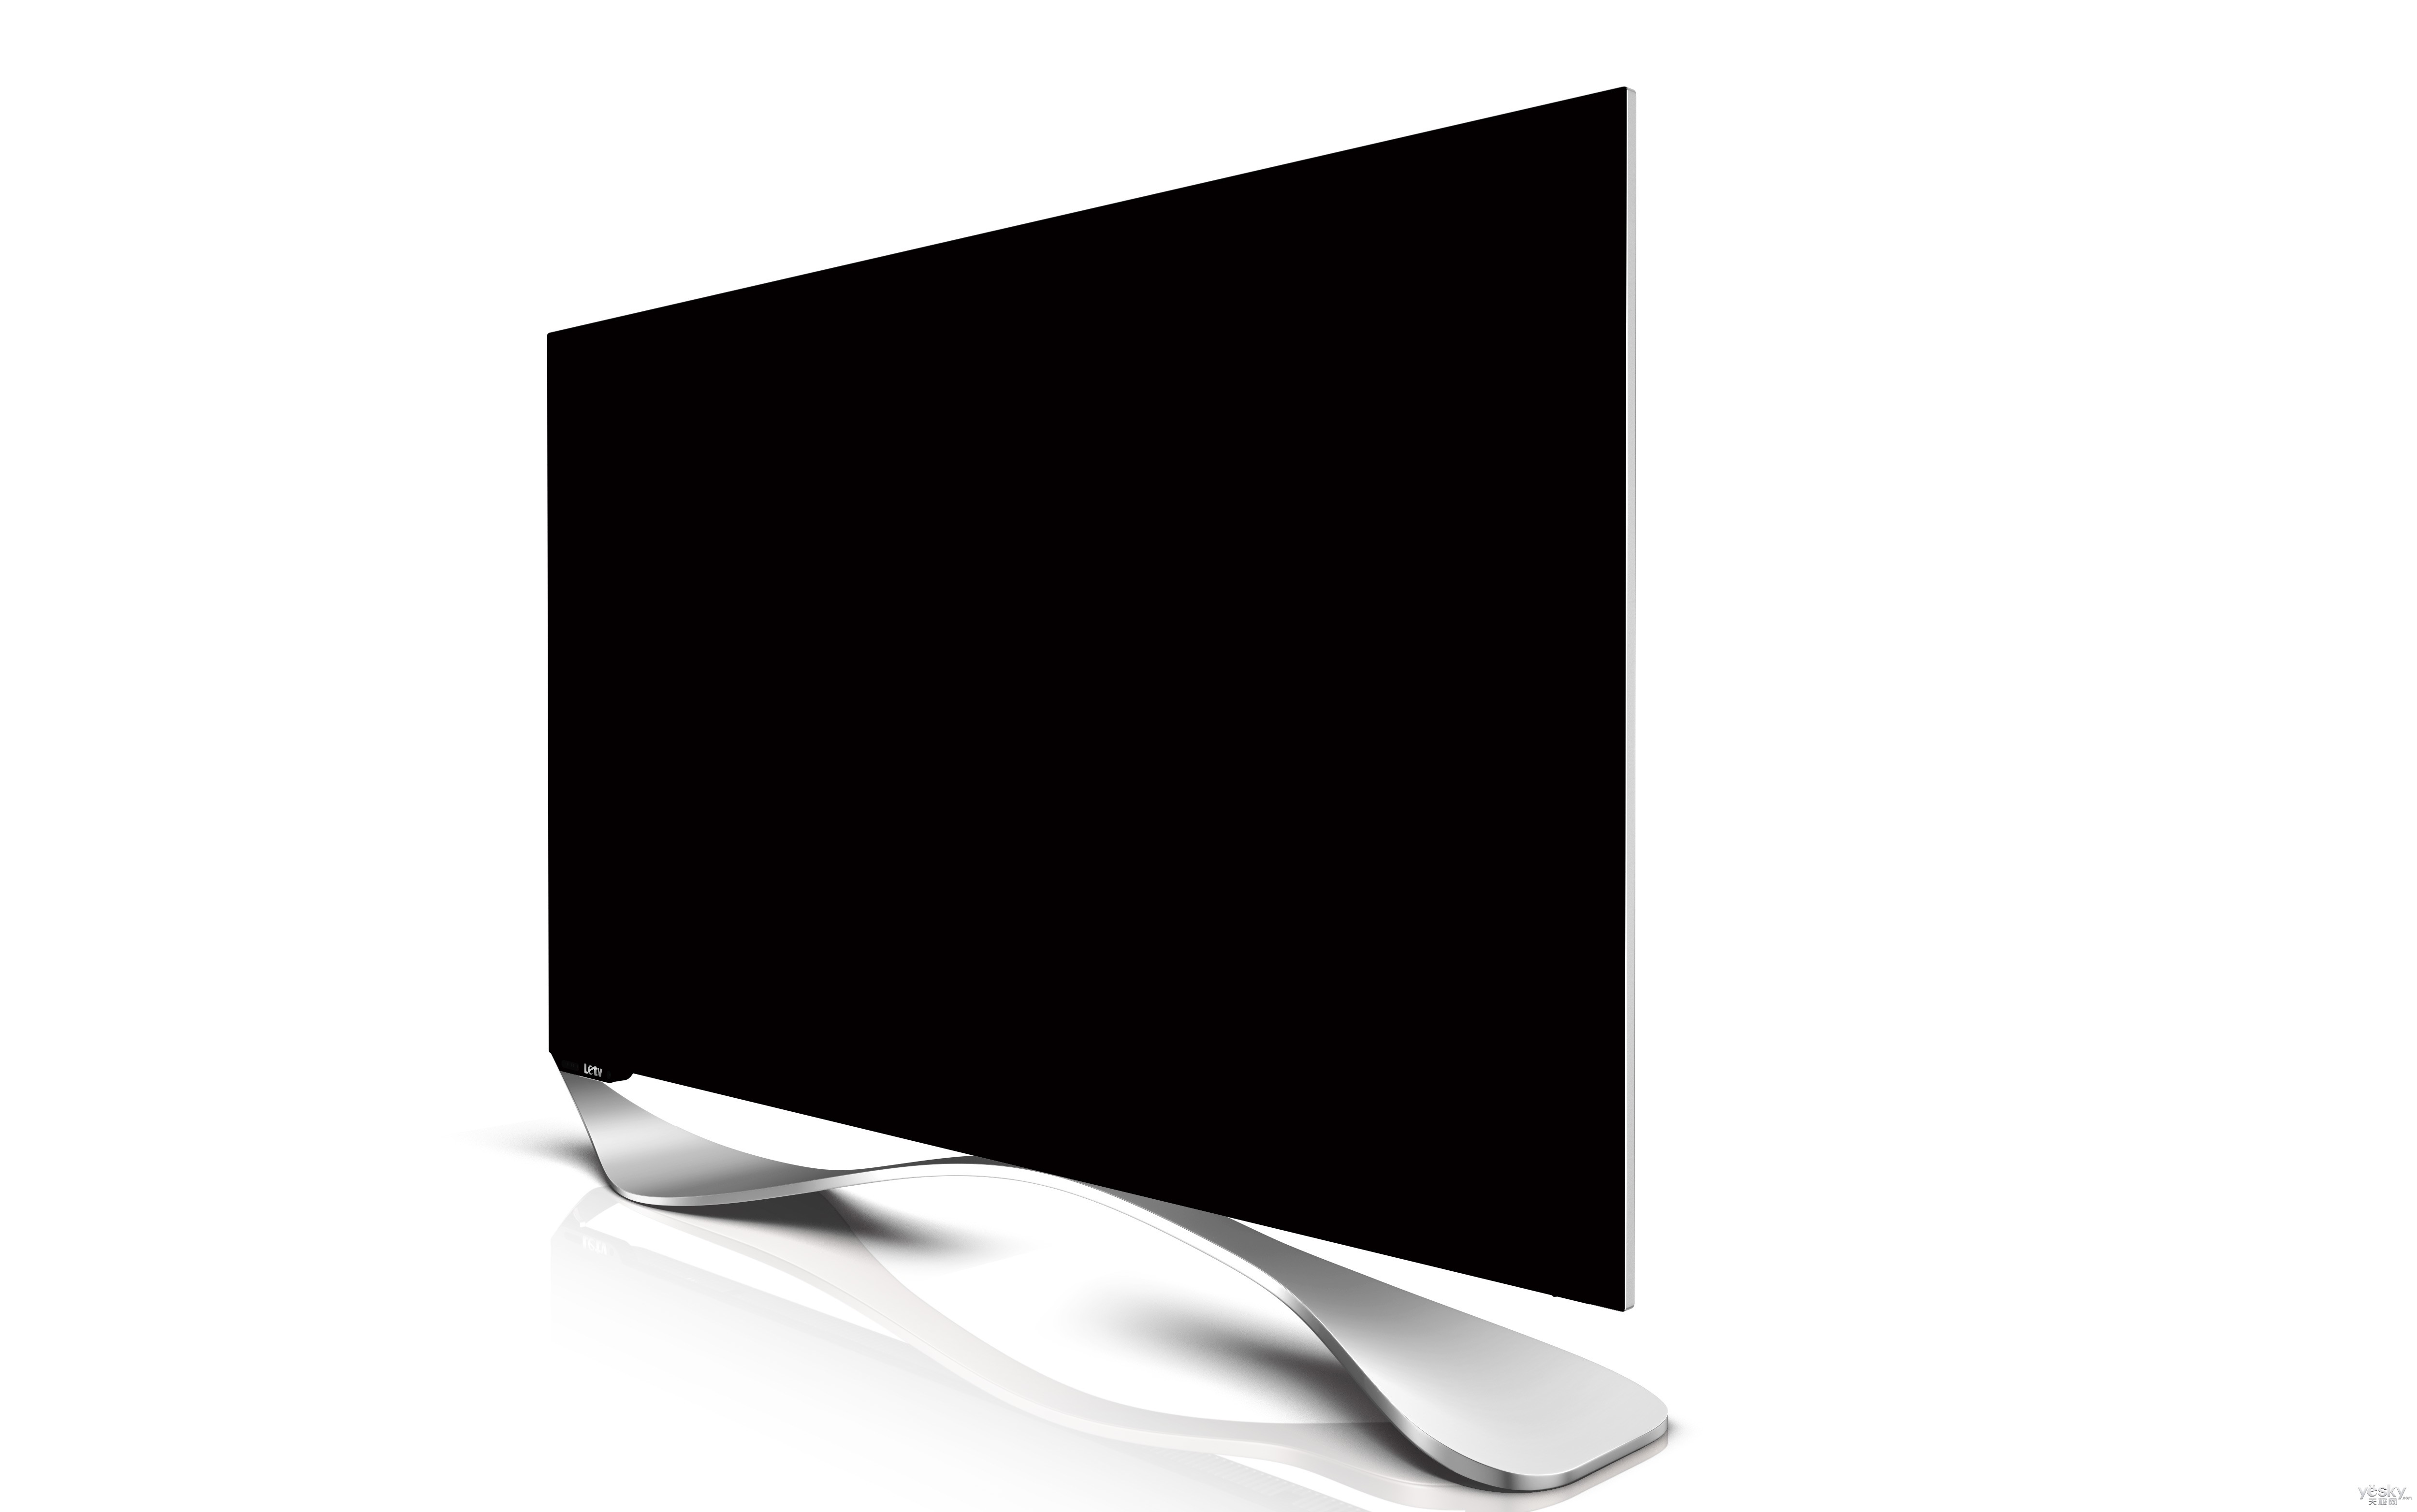 乐视超级电视logo图片